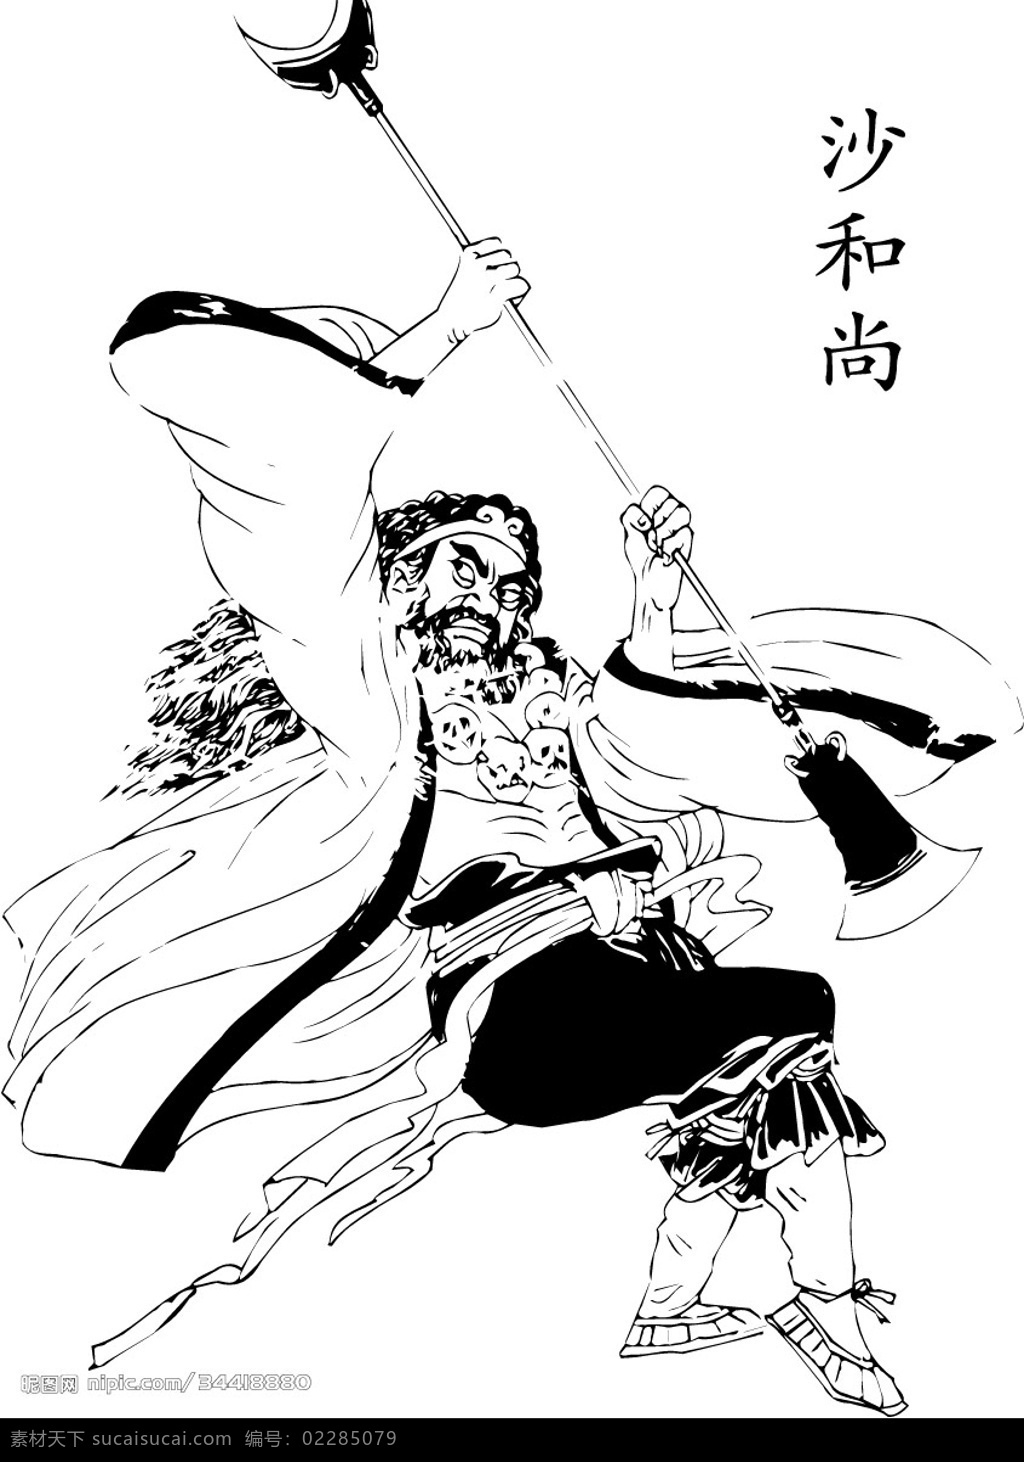 沙和尚 西游记人物 中国 古代 神话 人物 西游记 矢量人物 其他人物 矢量图库 沙僧 王母娘娘